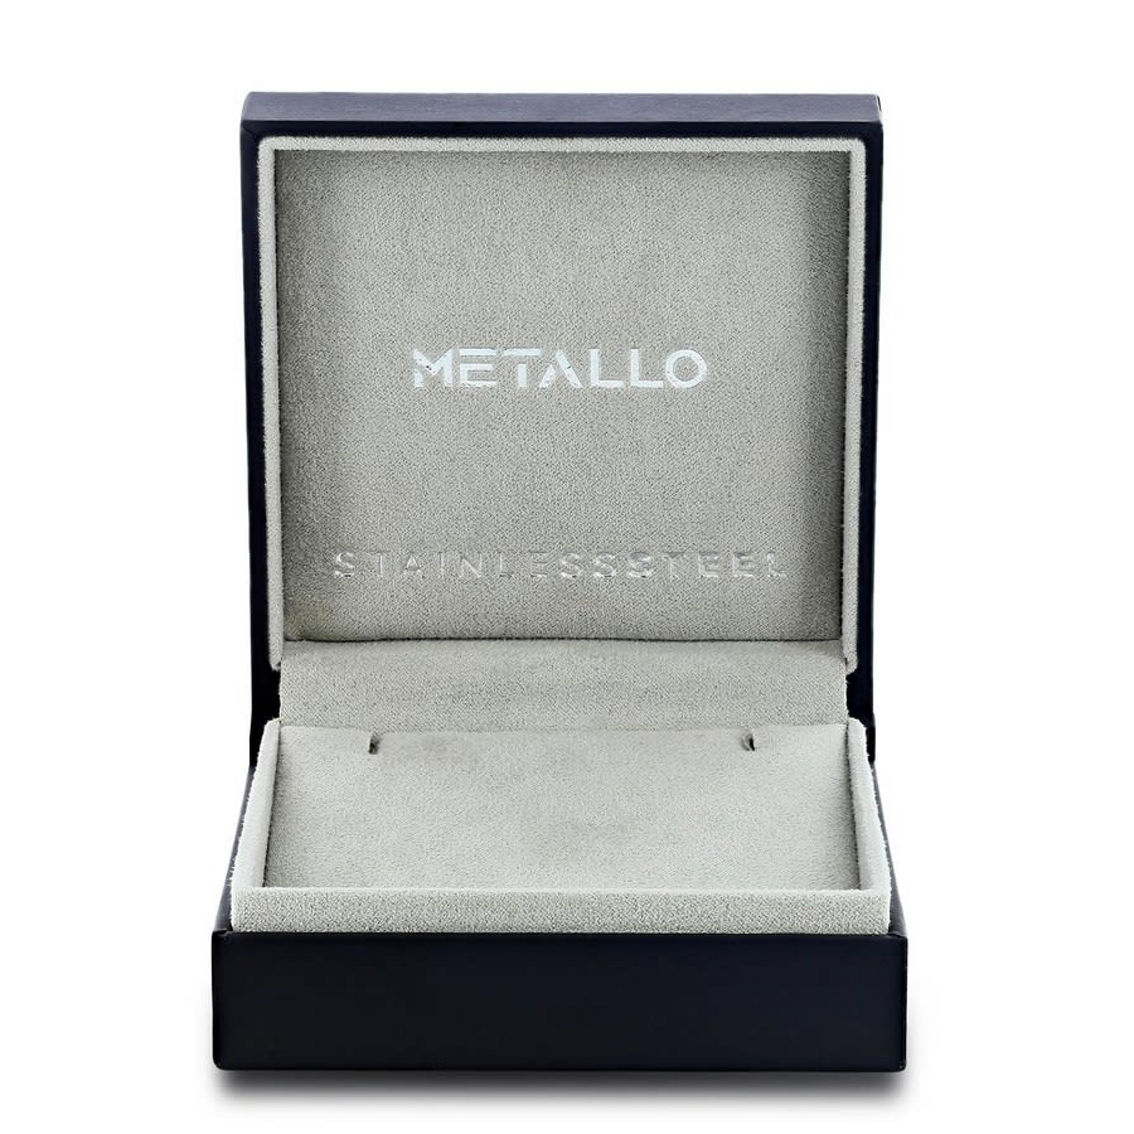 Metallo Stainless Steel 10mm Bead Bracelet - Sodalite - Image 3 of 3